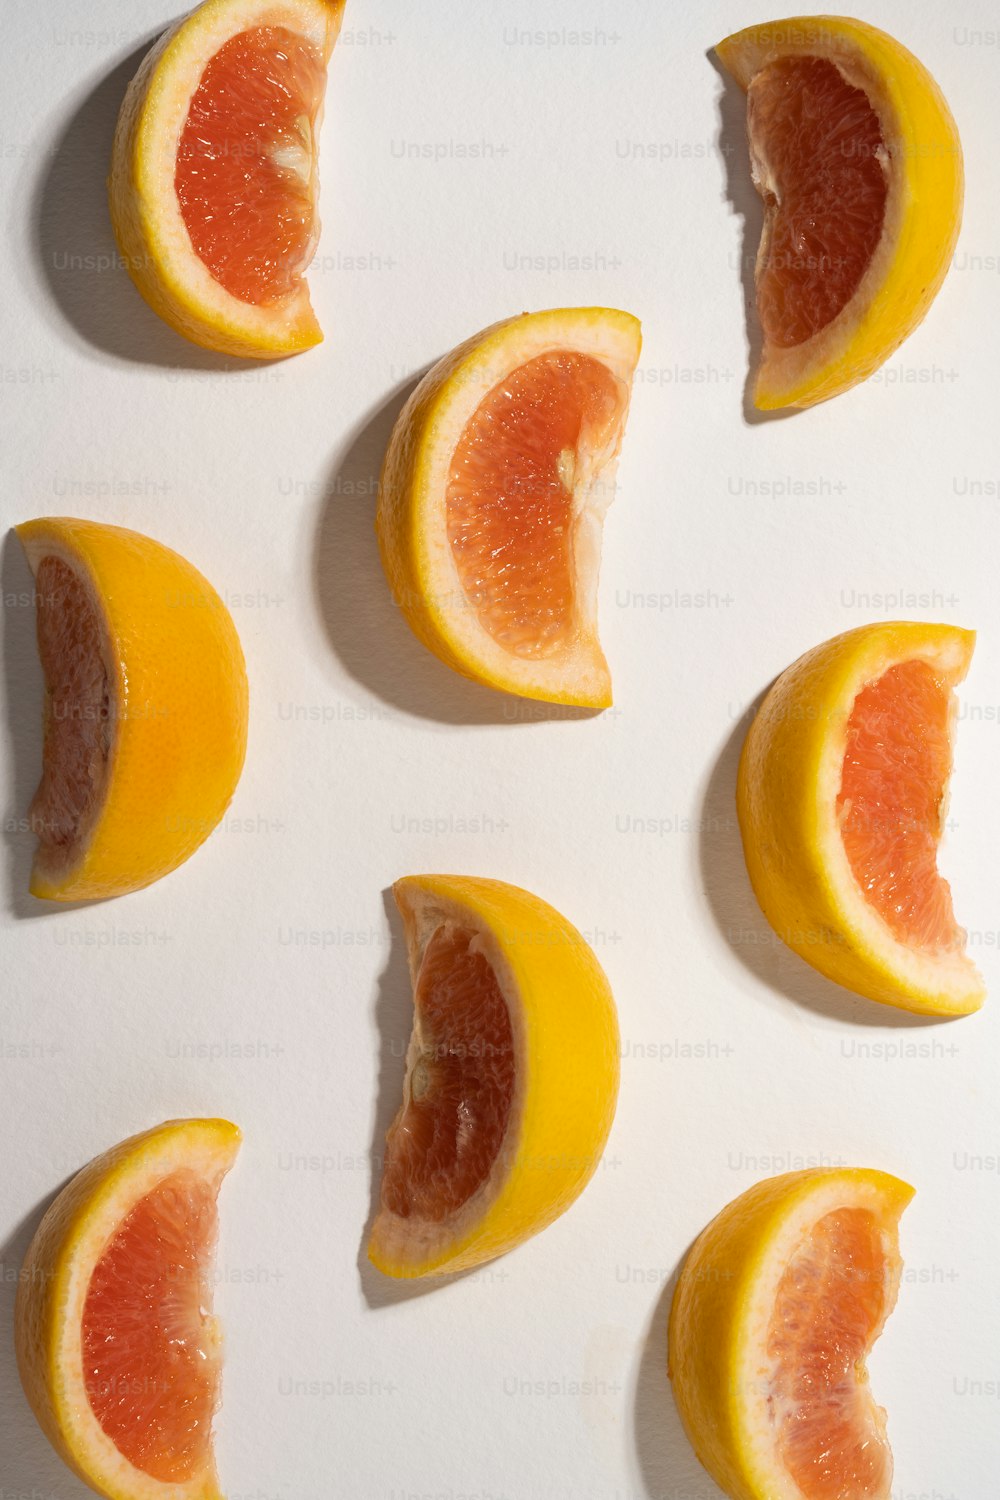 eine Gruppe von Grapefruits, die auf einer weißen Fläche in zwei Hälften geschnitten sind